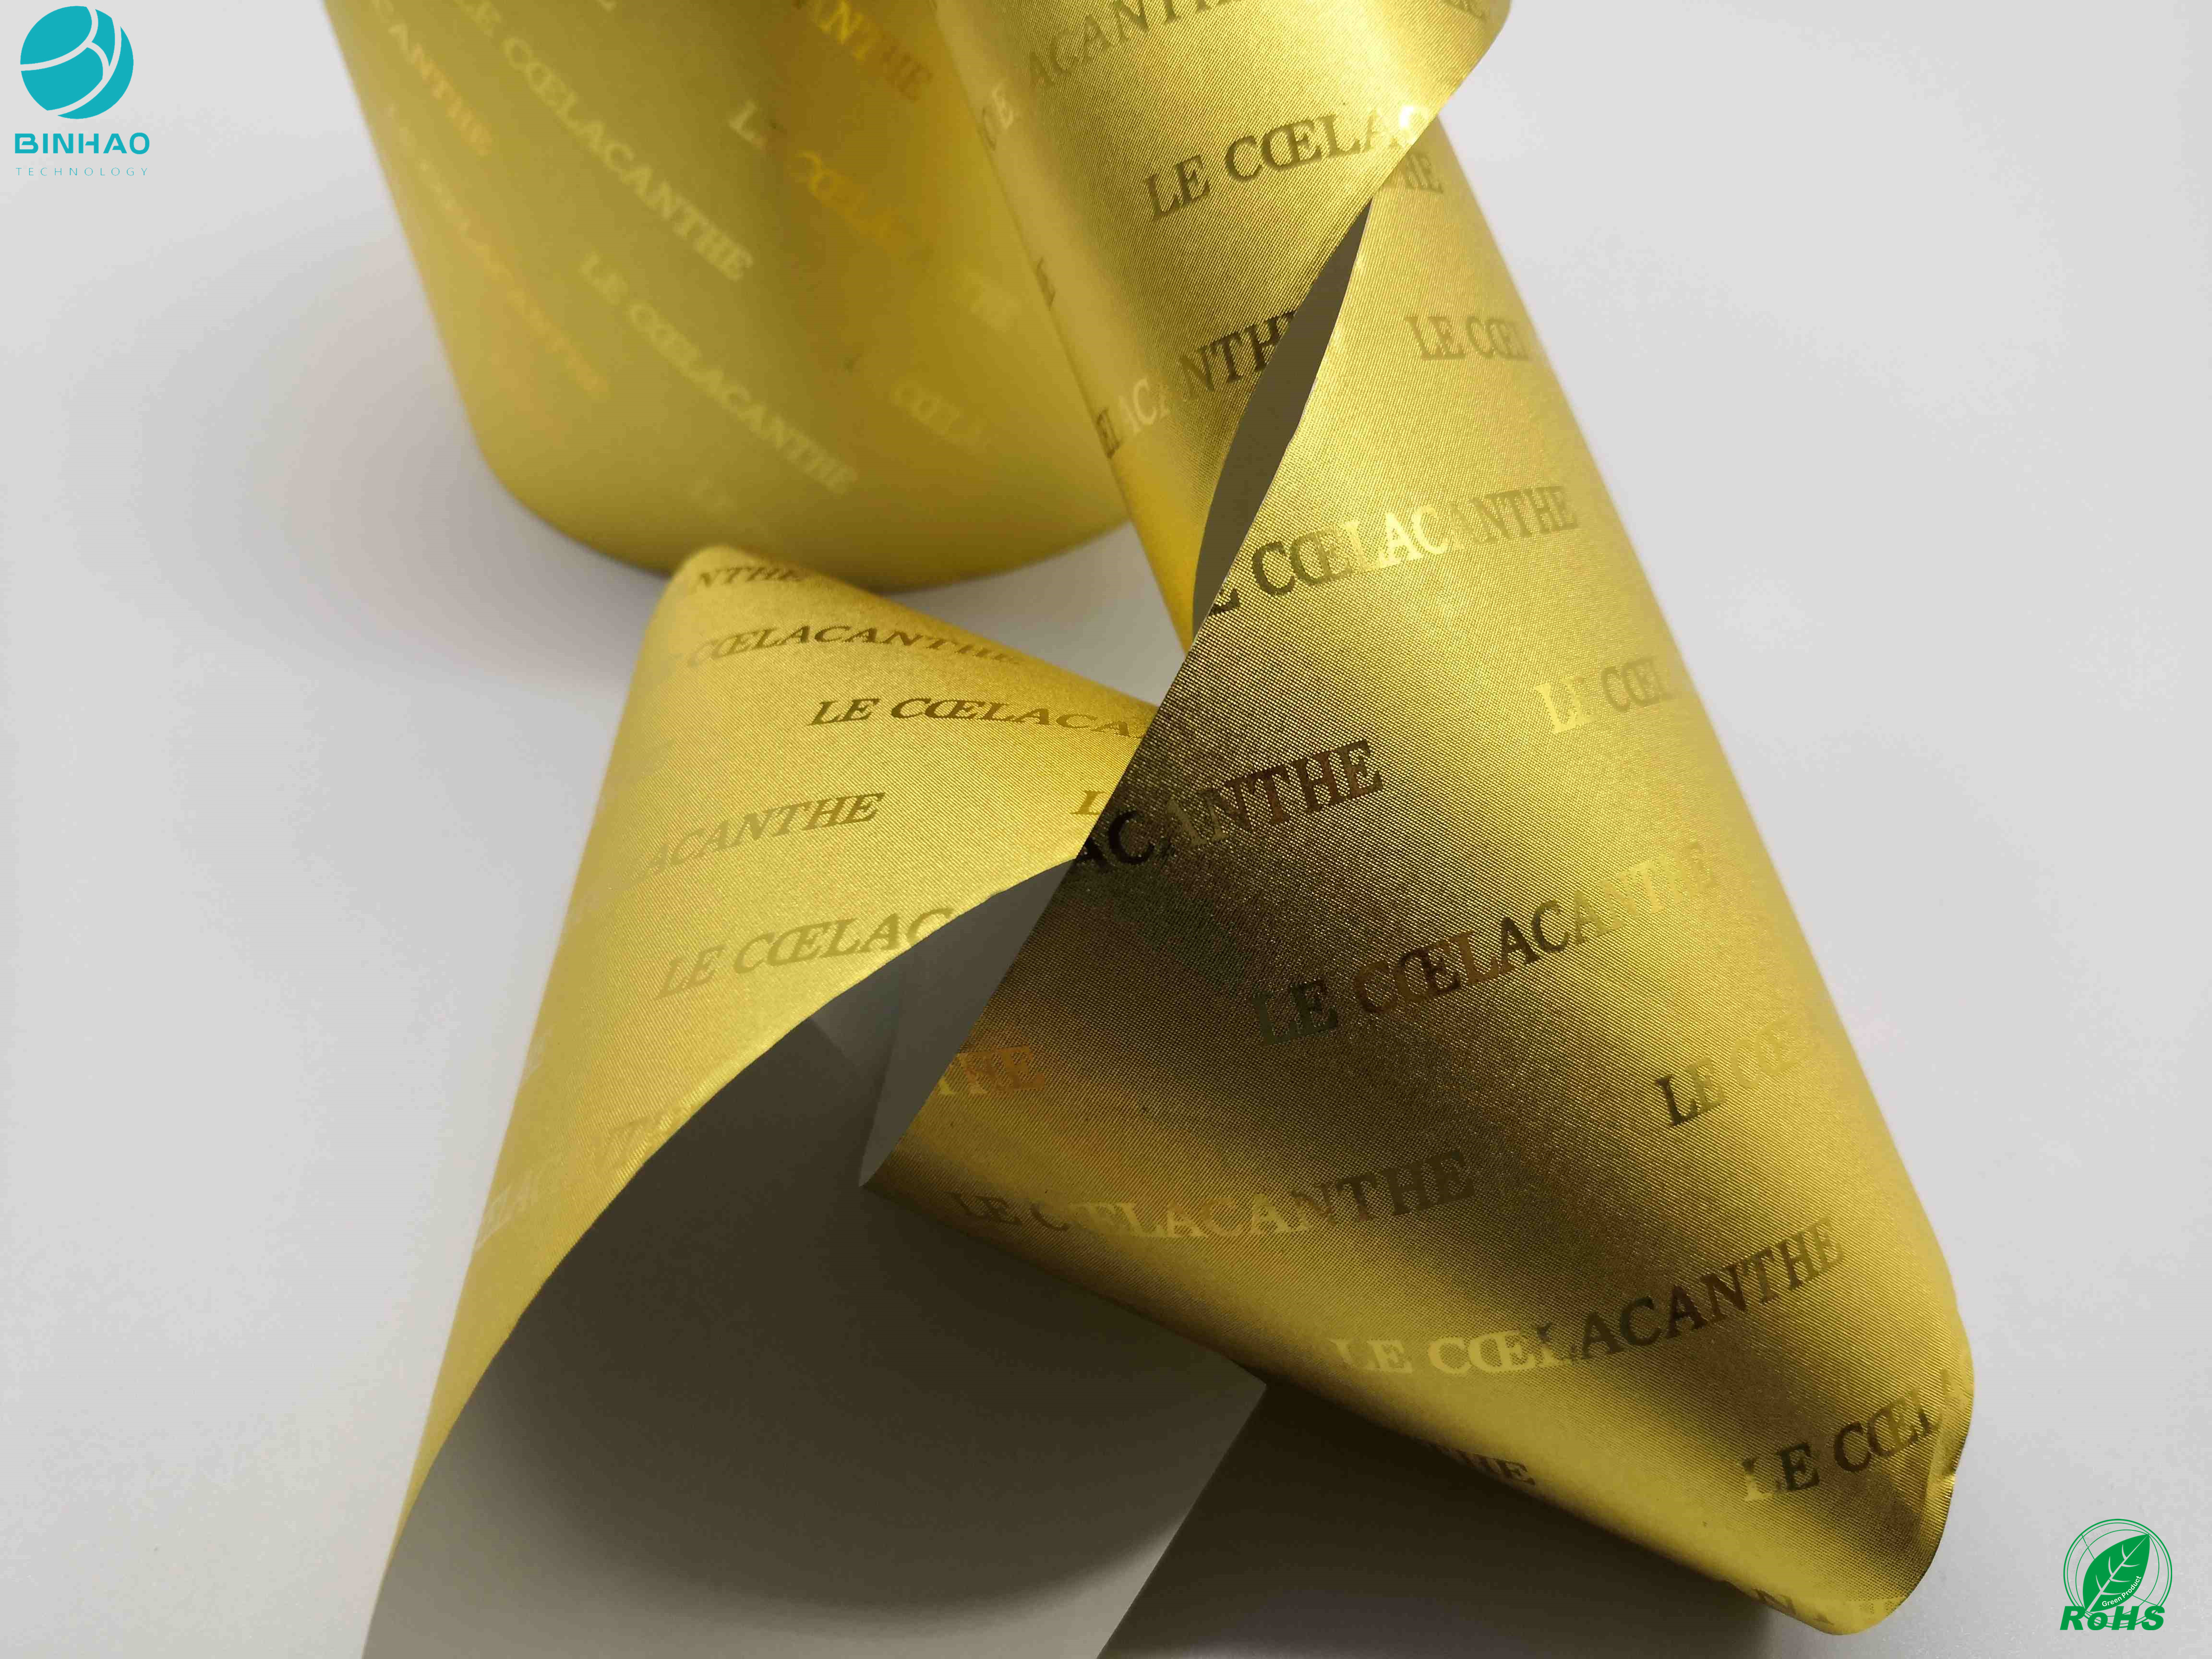 El color del oro de papel de papel de aluminio del tabaco el 1500M Long Good Extensibility modificó para requisitos particulares